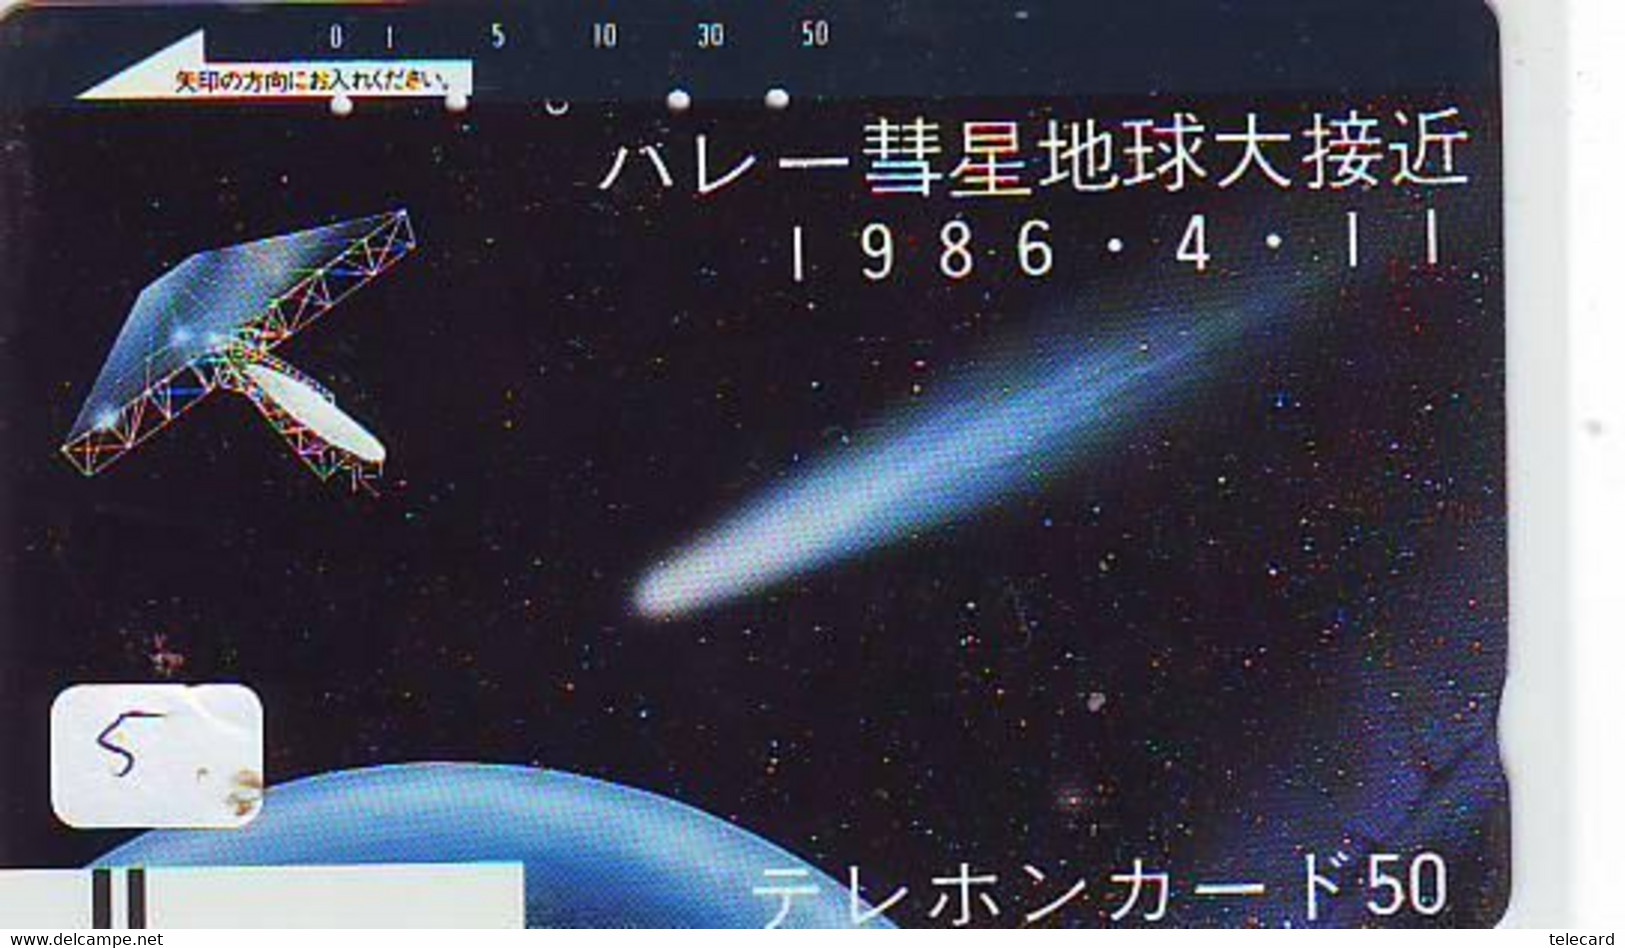 Télécarte COMET (5) COMETE-Japan SPACE * Espace * WELTRAUM *UNIVERSE* PLANET* BALKEN* 110-4408 - Astronomia